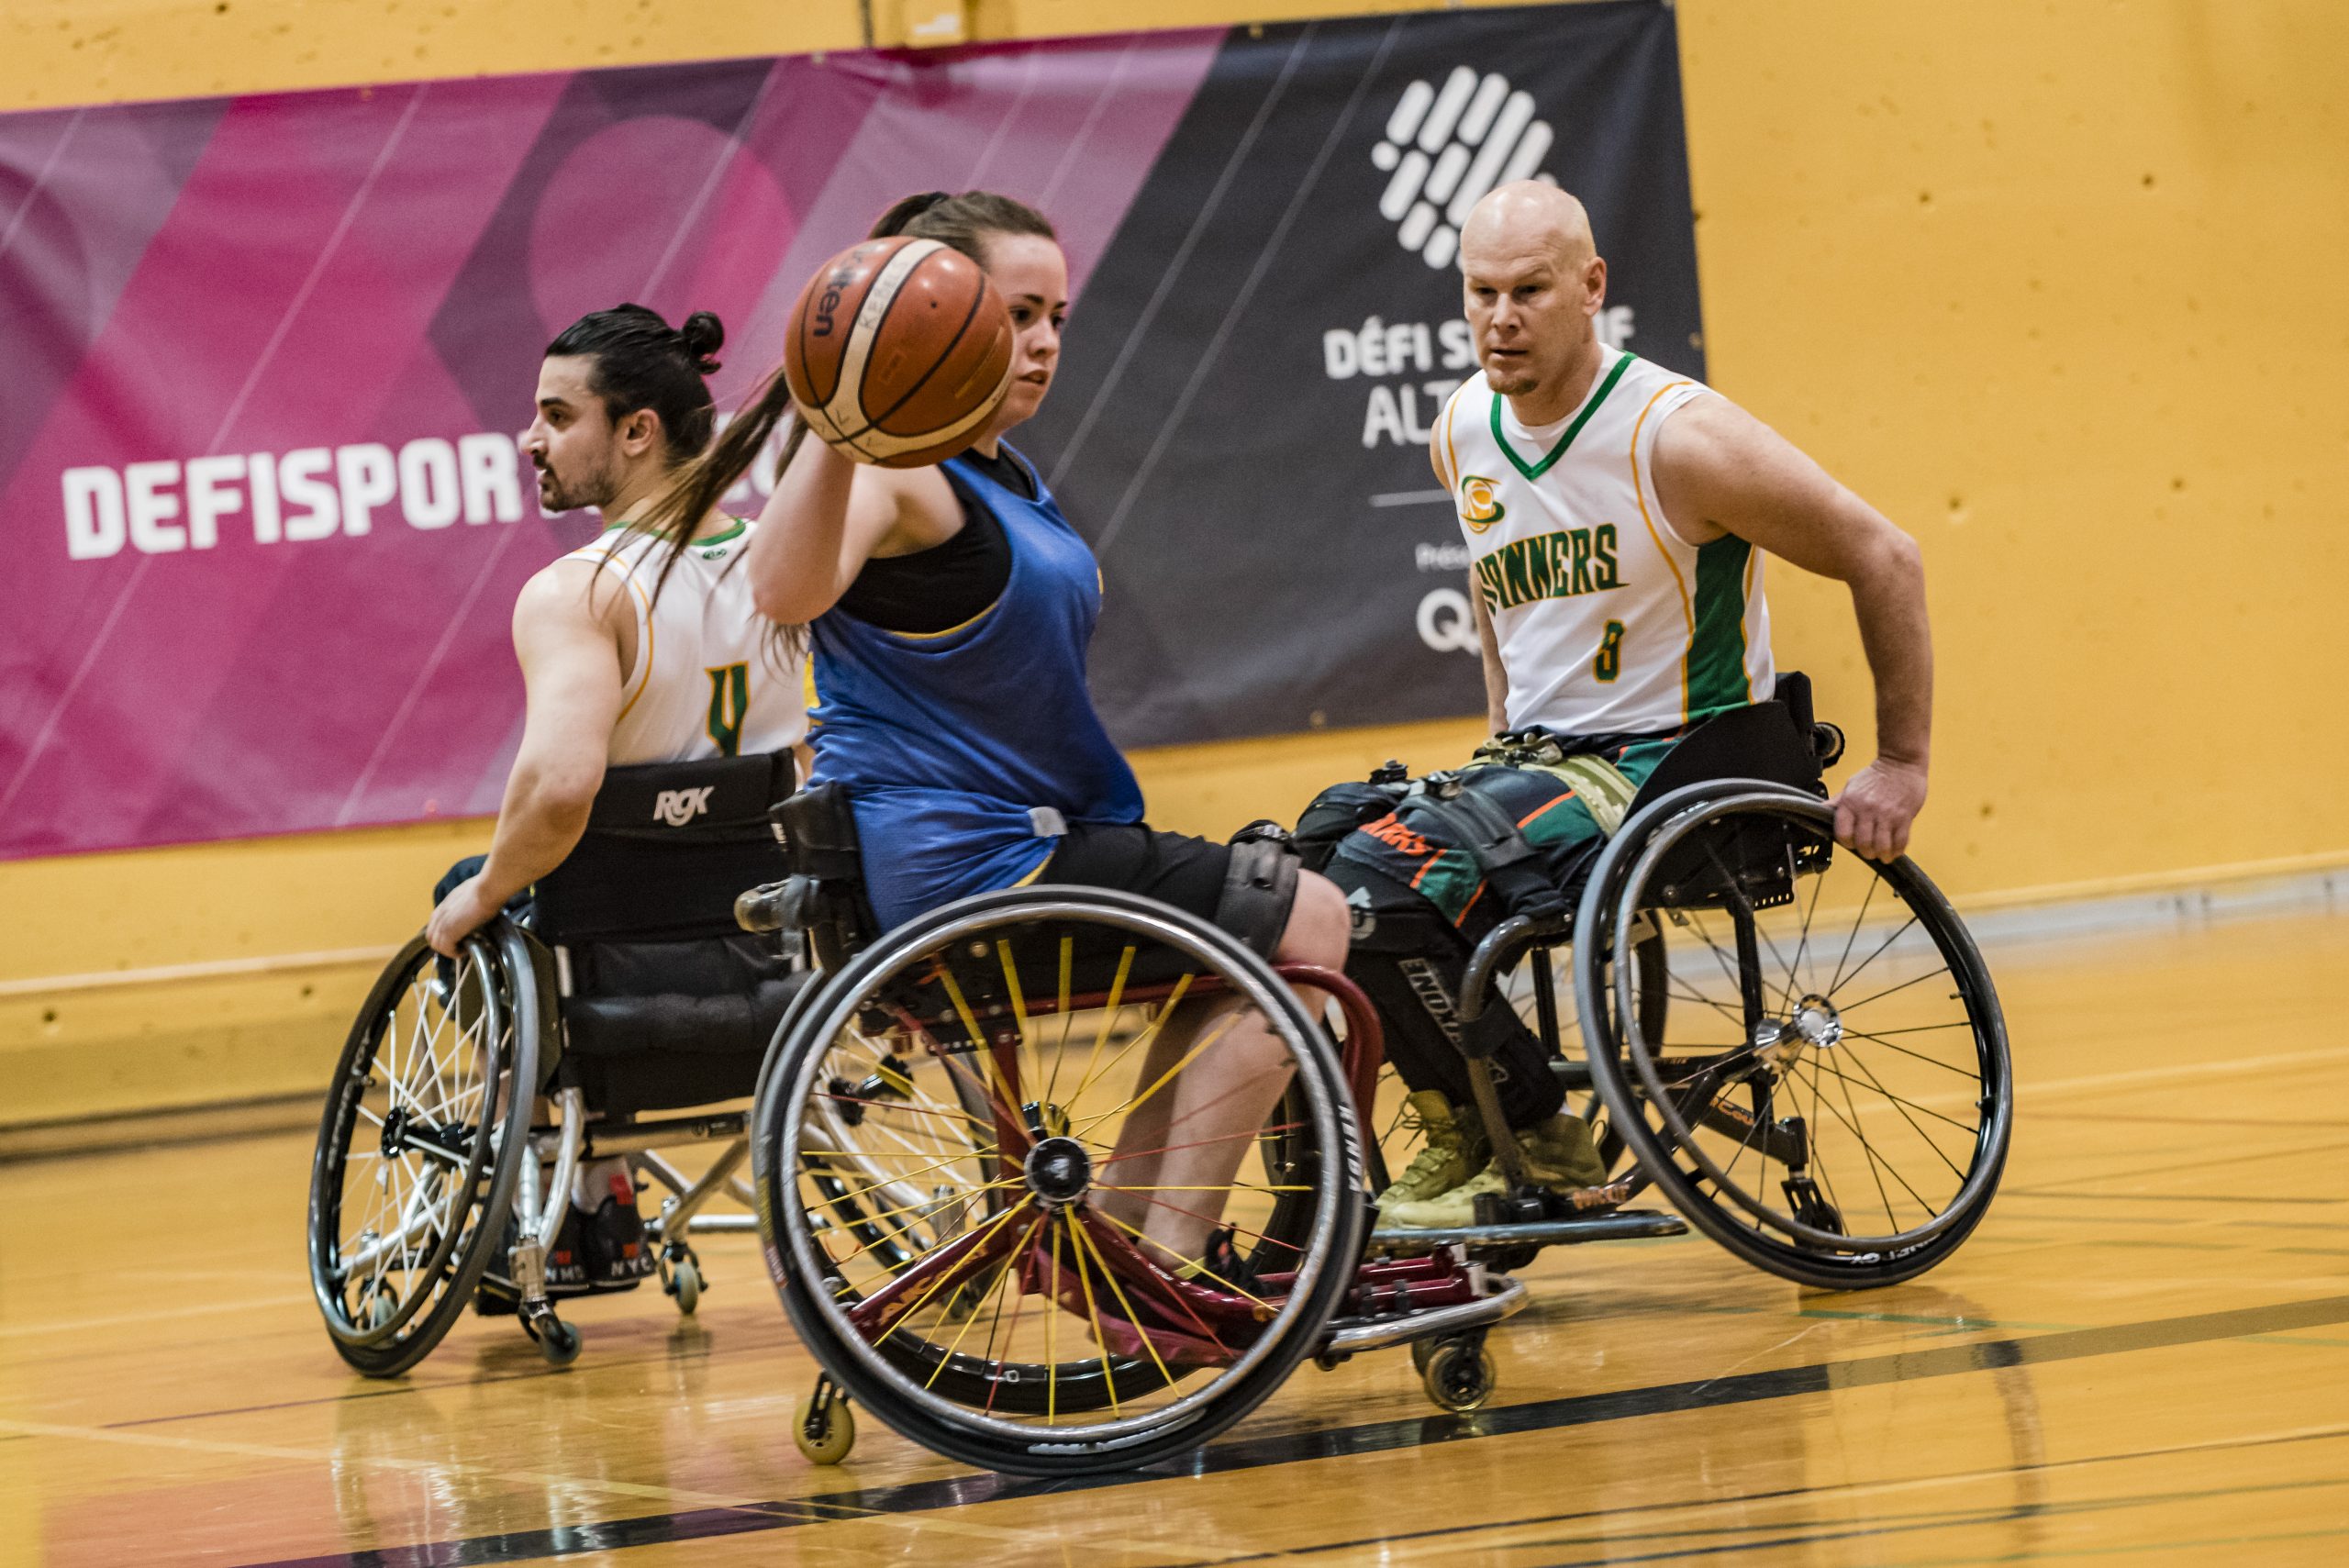 Description de l'image : Au centre, une athlète de basketball en fauteuil dribble avec le ballon. Un adversaire près d'elle la regarde.